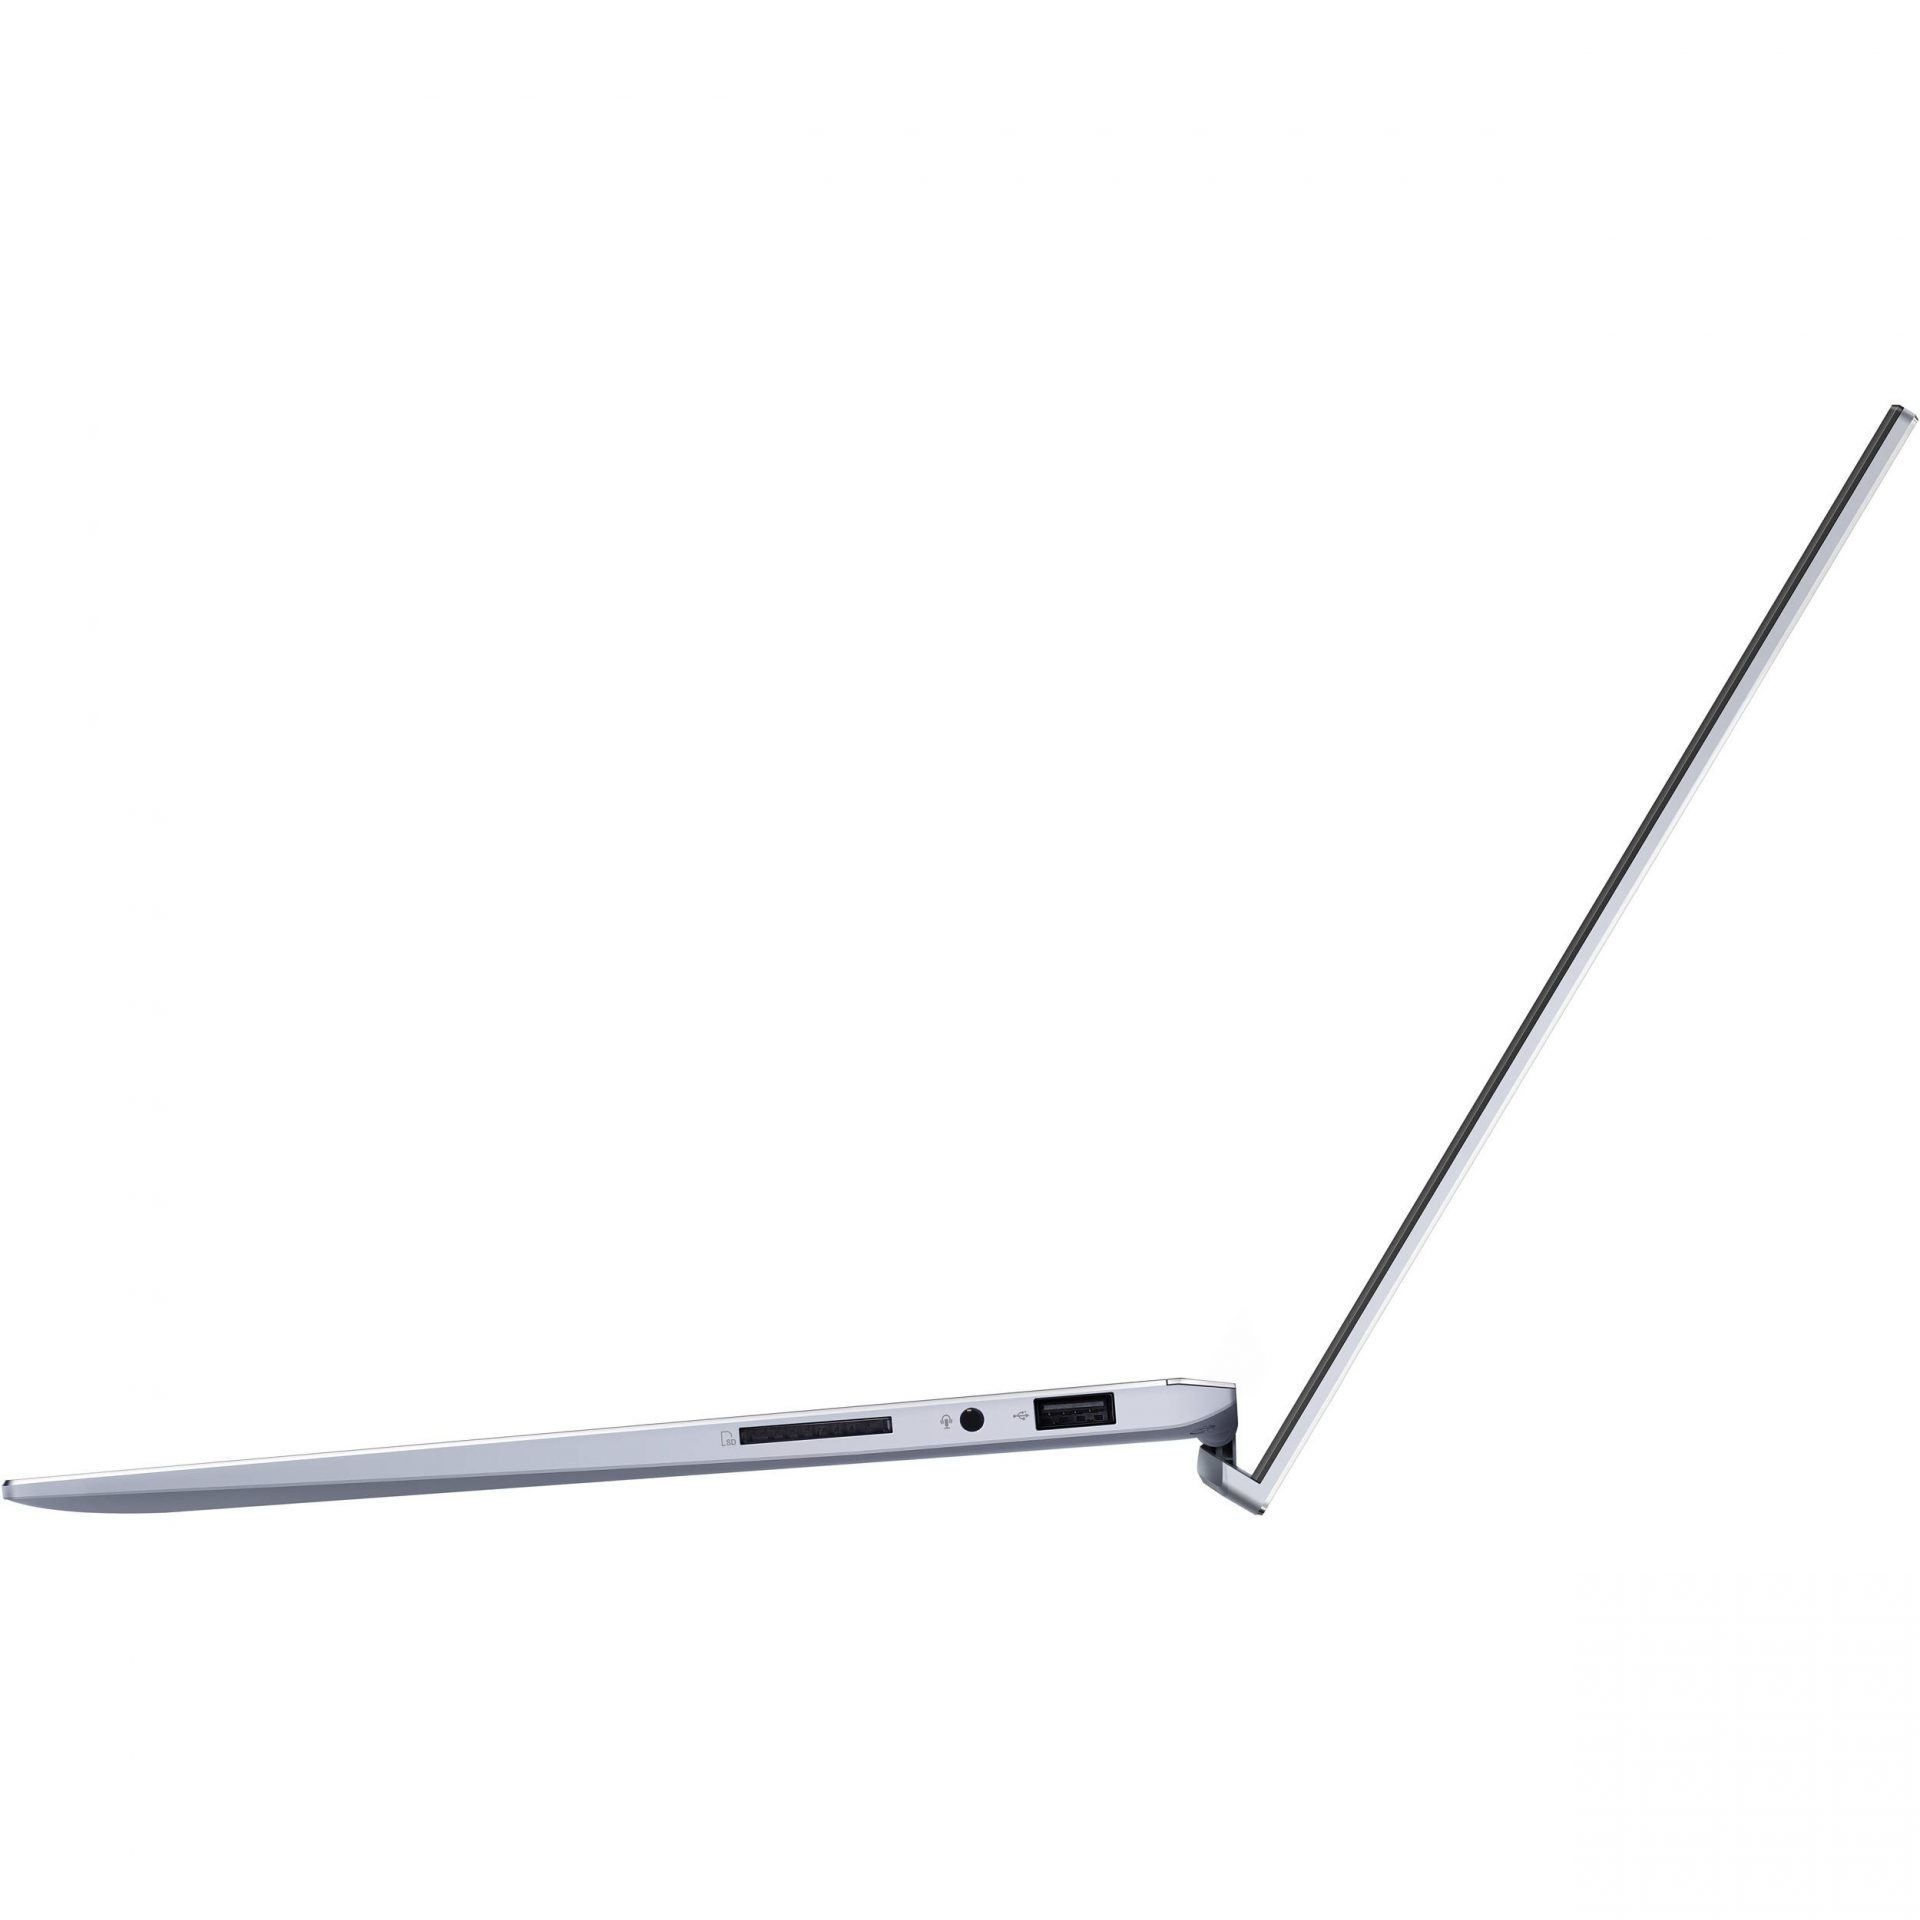 ASUS ZenBook UX431FL